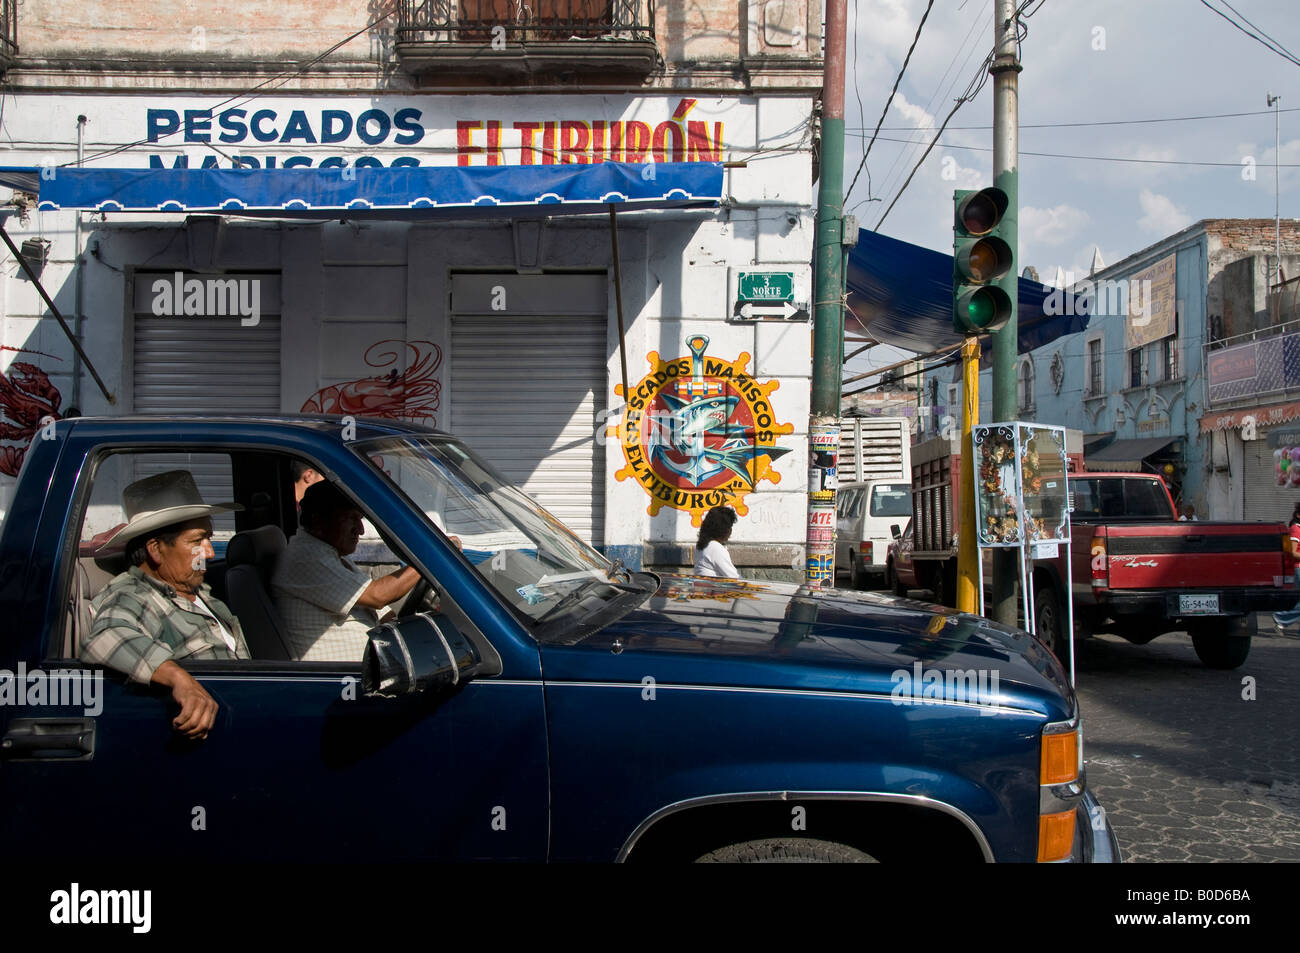 Palenque, Mexique - 23 Mai 2017: Camionnette Blanche Dodge Ram Dans La Rue.  Banque D'Images et Photos Libres De Droits. Image 92900932